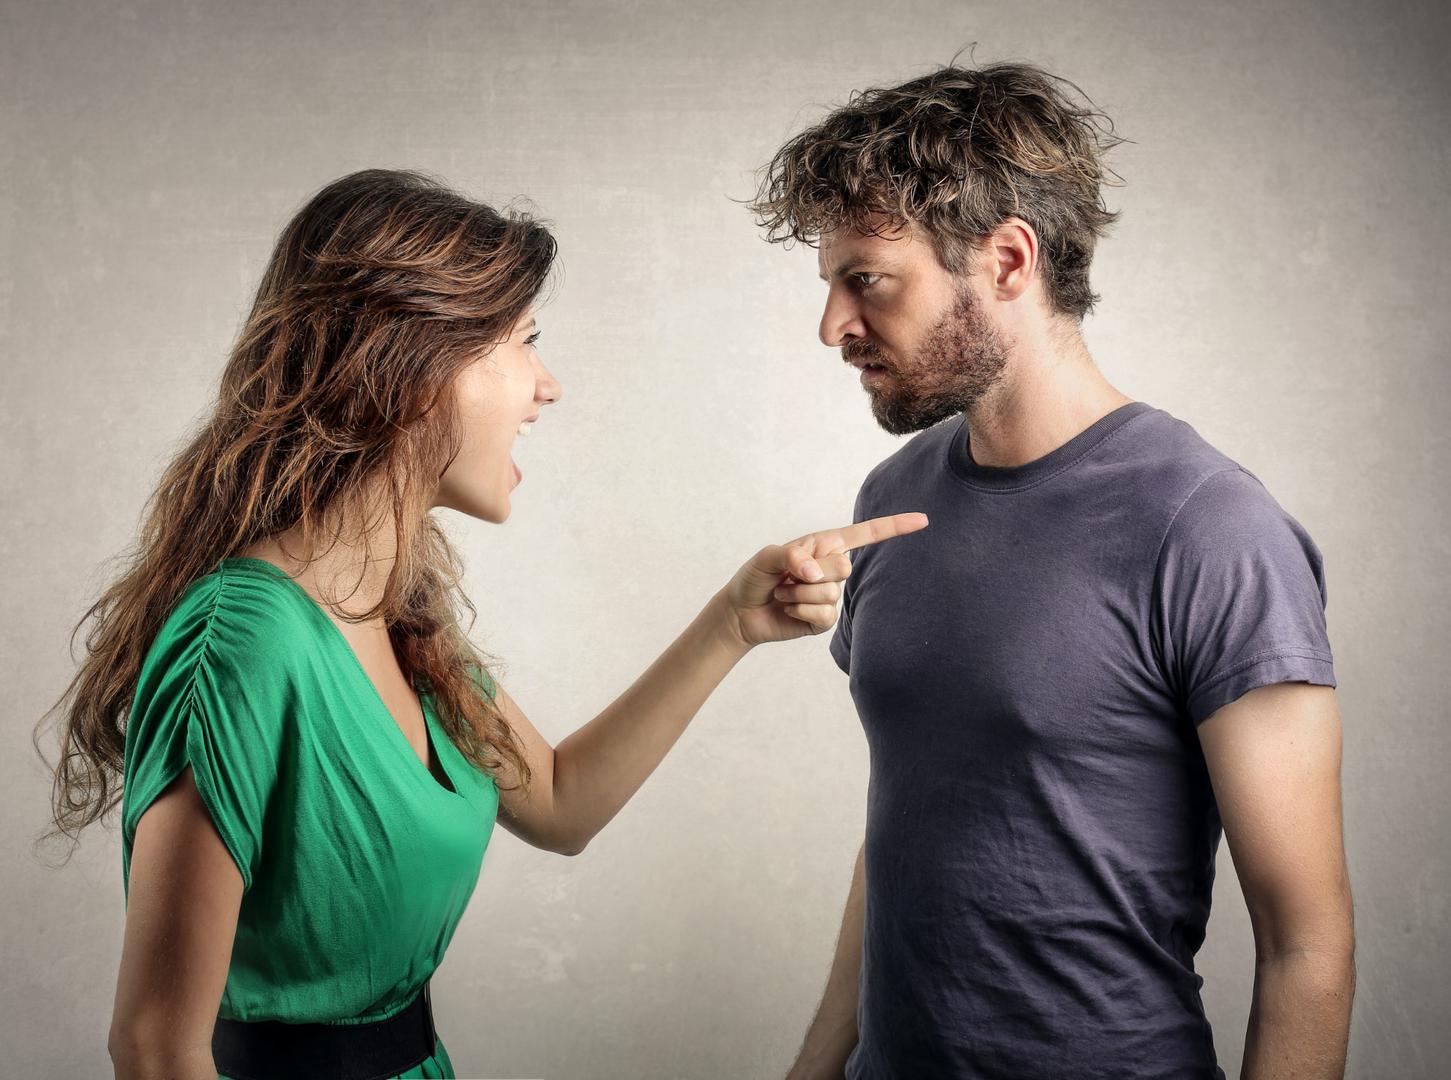 Ako partner maše lijevom rukom dok se razgovarate to znači da se ne osjeća ugodno s onim što vam govori. Trljanje lijevog oka lijevom rukom također pokazuje da nisu posve iskreni s vama.
